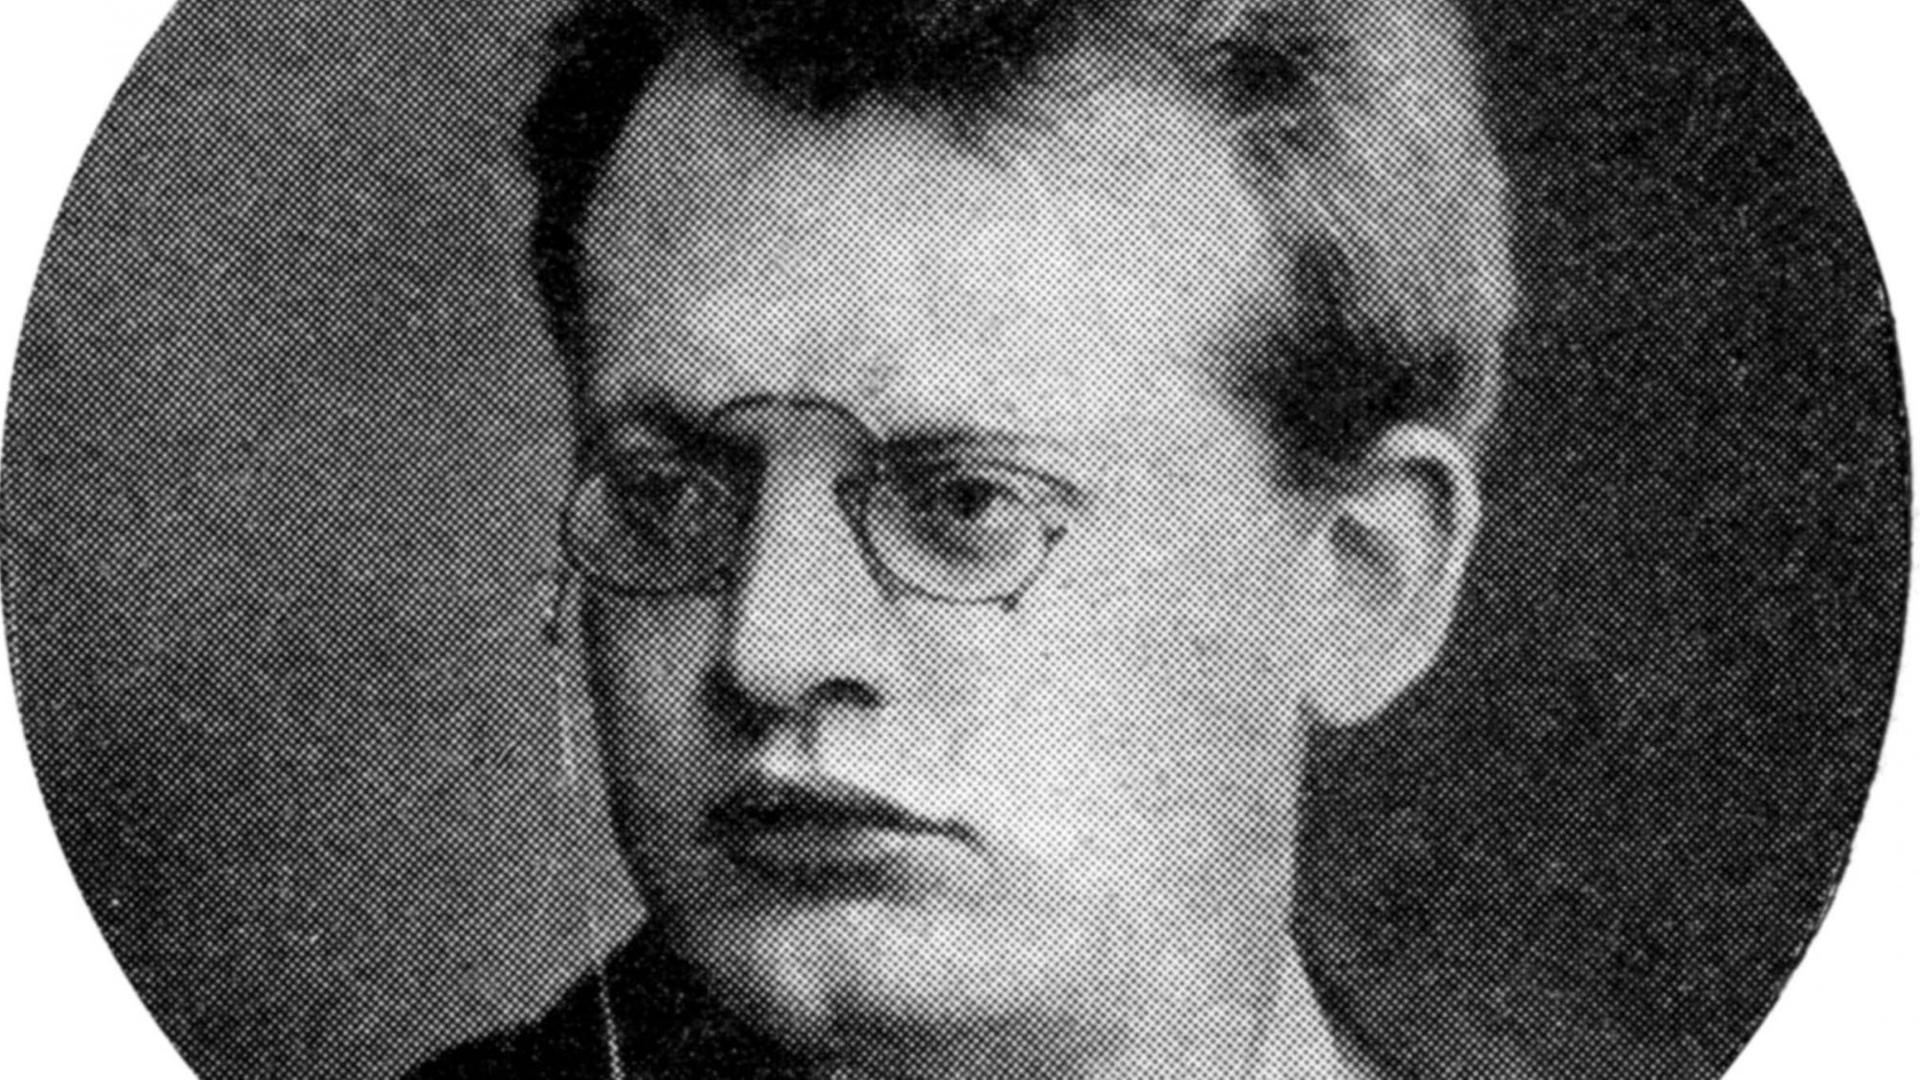 Der Komponist Max Reger im Jahr 1907